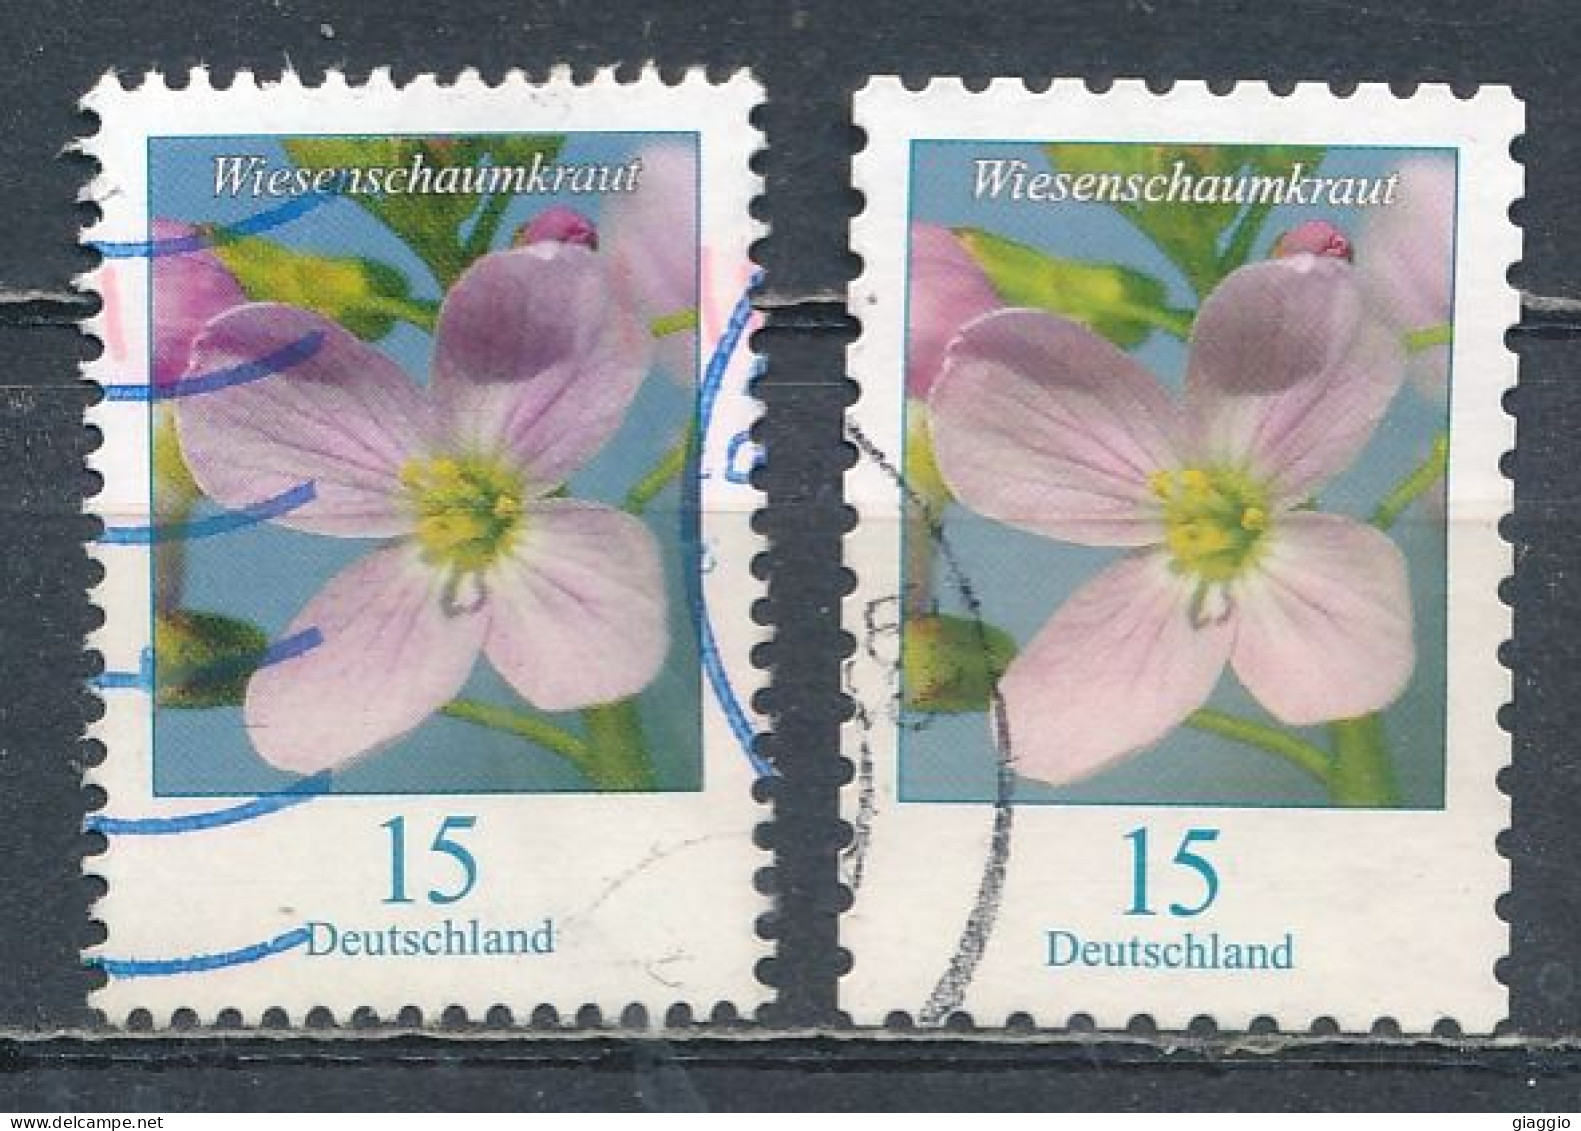 °°° GERMANY - Y&T N°3202/3 - 2018 °°° - Used Stamps